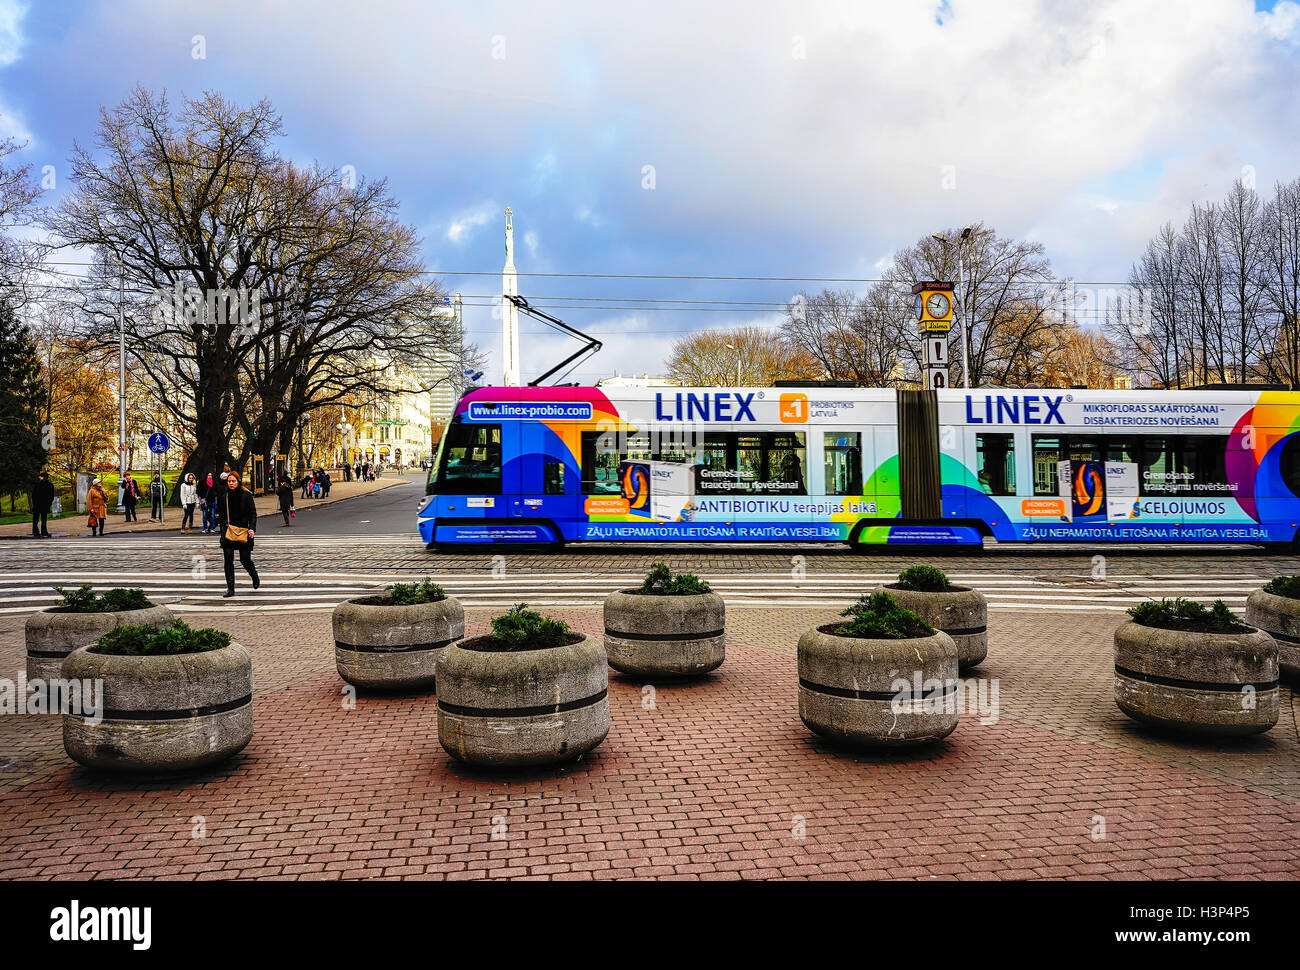 Riga, Lettland - 26. Dezember 2015: Straßenbahn und Menschen auf der Straße in der alten Stadt Riga, Hauptstadt Lettlands, an Weihnachten. Kein Schnee, kein Wind, nur Sonne. Selektiven Fokus Stockfoto